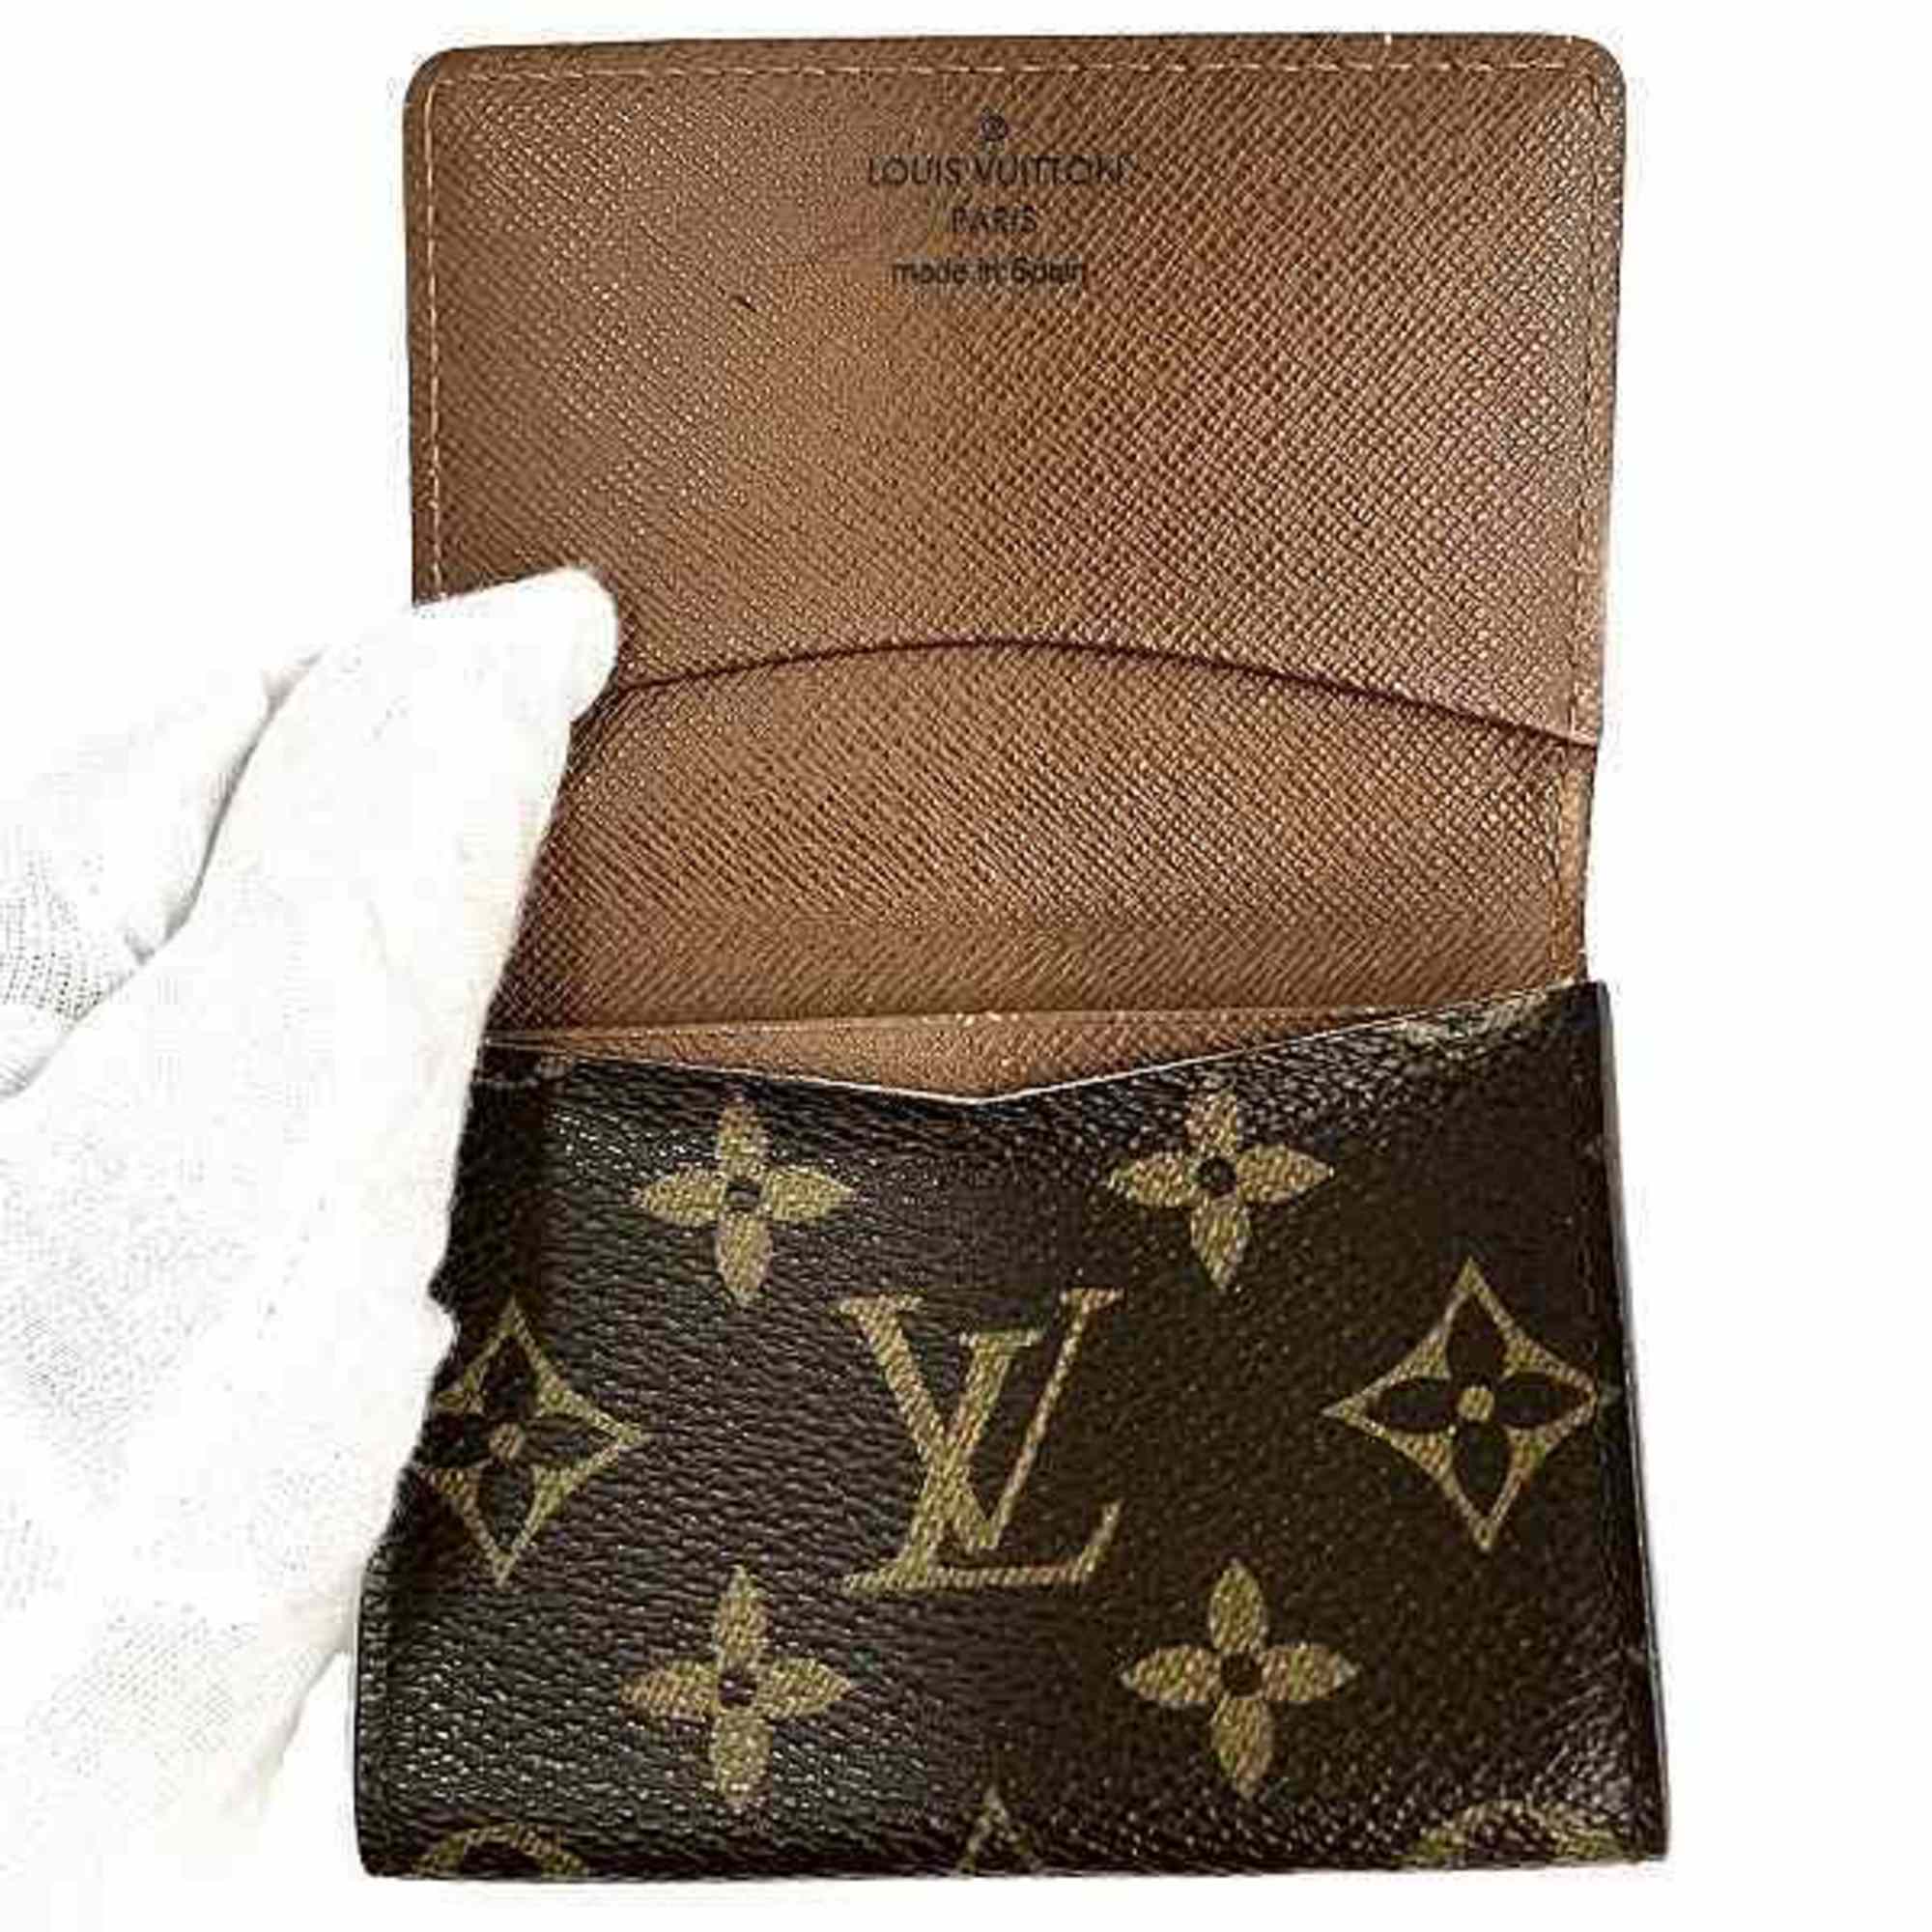 Louis Vuitton Monogram Envelope Carte de Visite M62920 Business card holder/card case, accessories, business holder, men's, women's